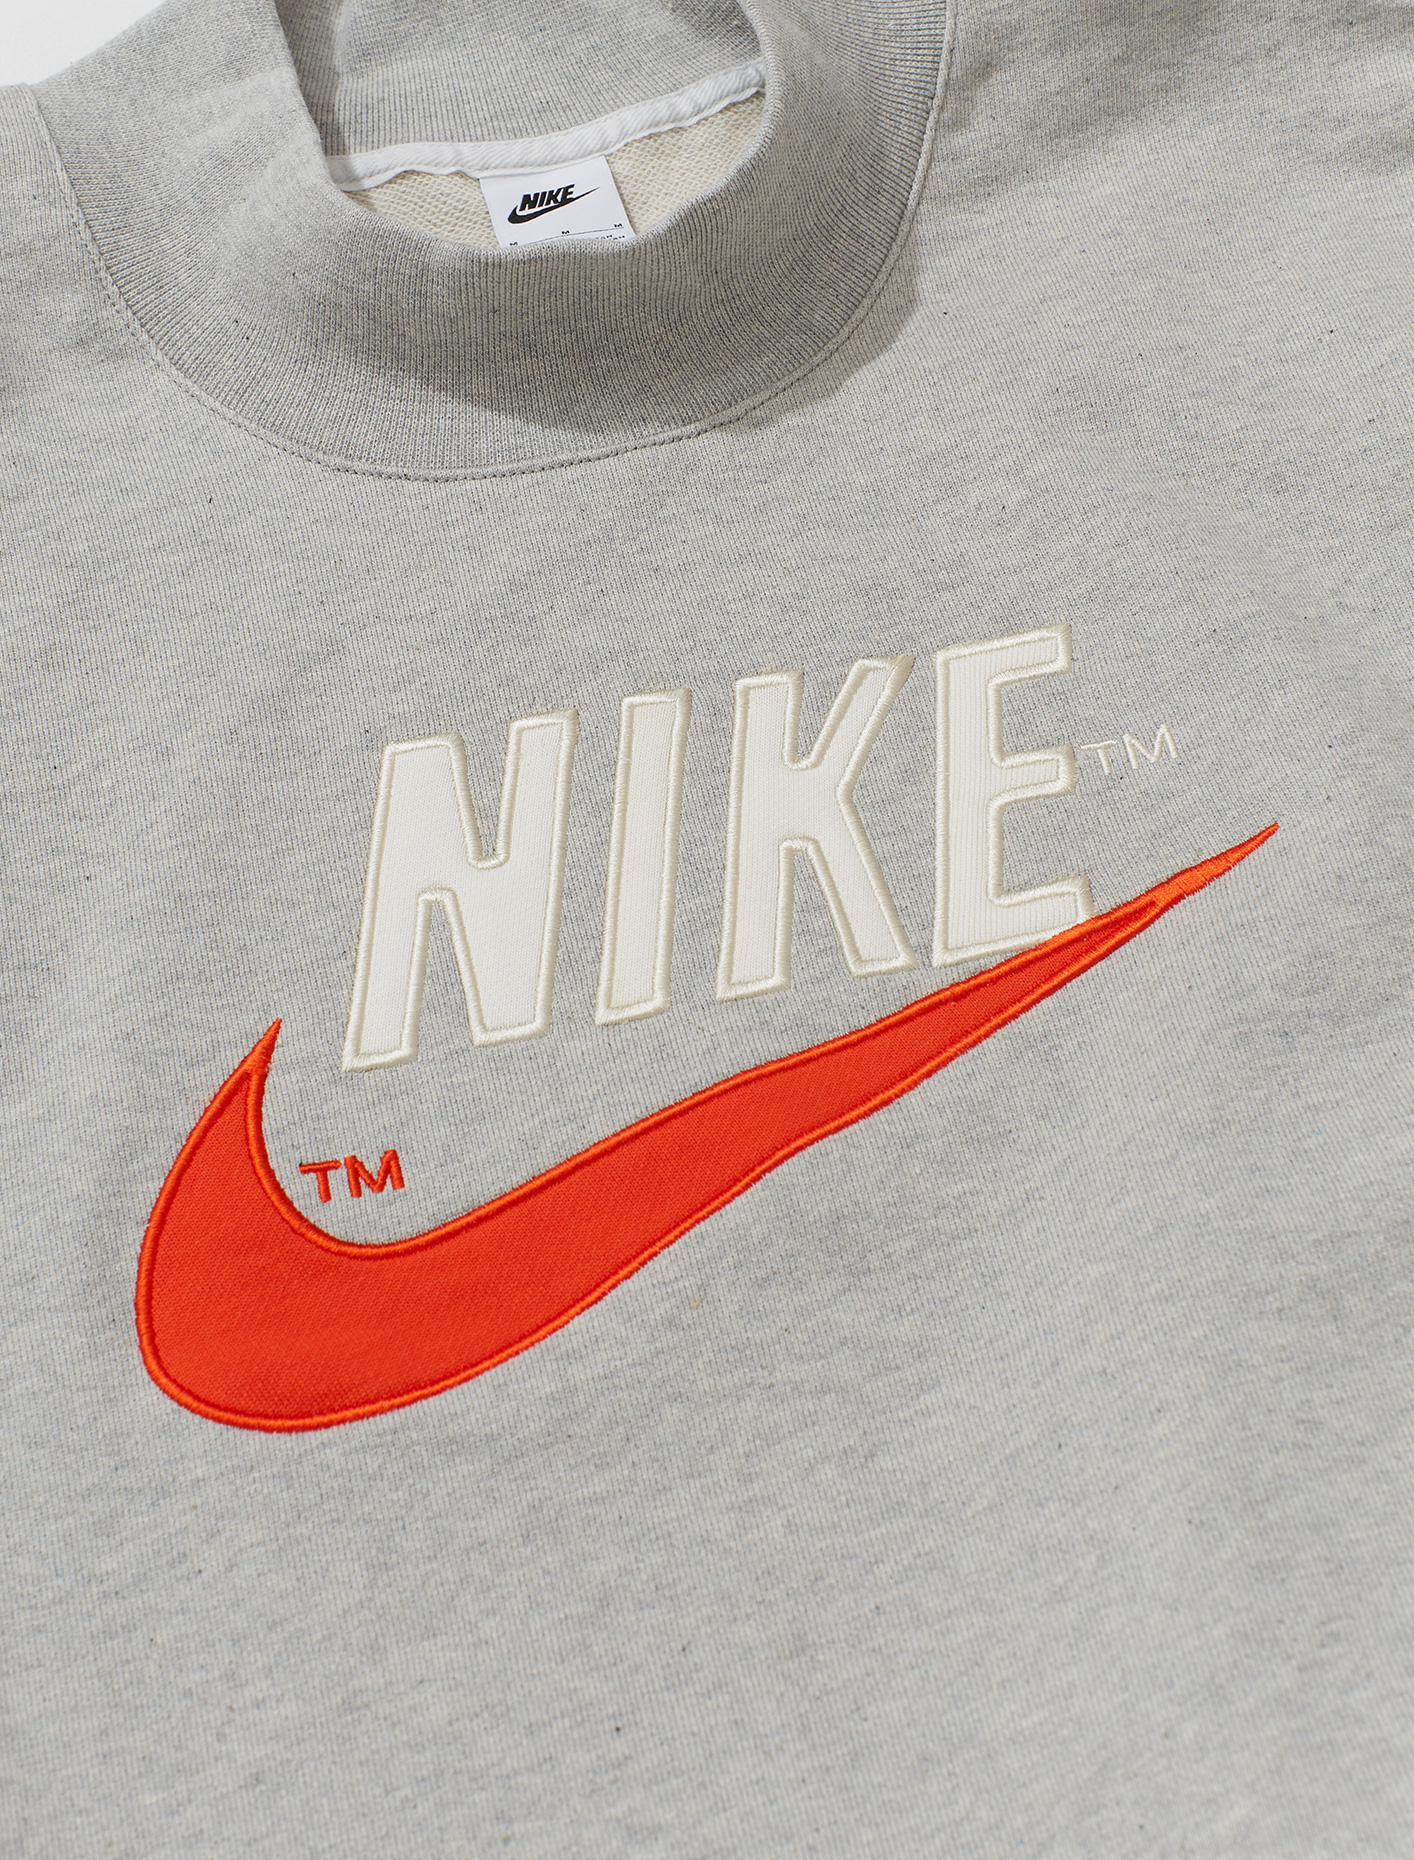 Nike Sportswear Mock Neck Sweatshirt in Grey Heather | Voo Store Berlin ...